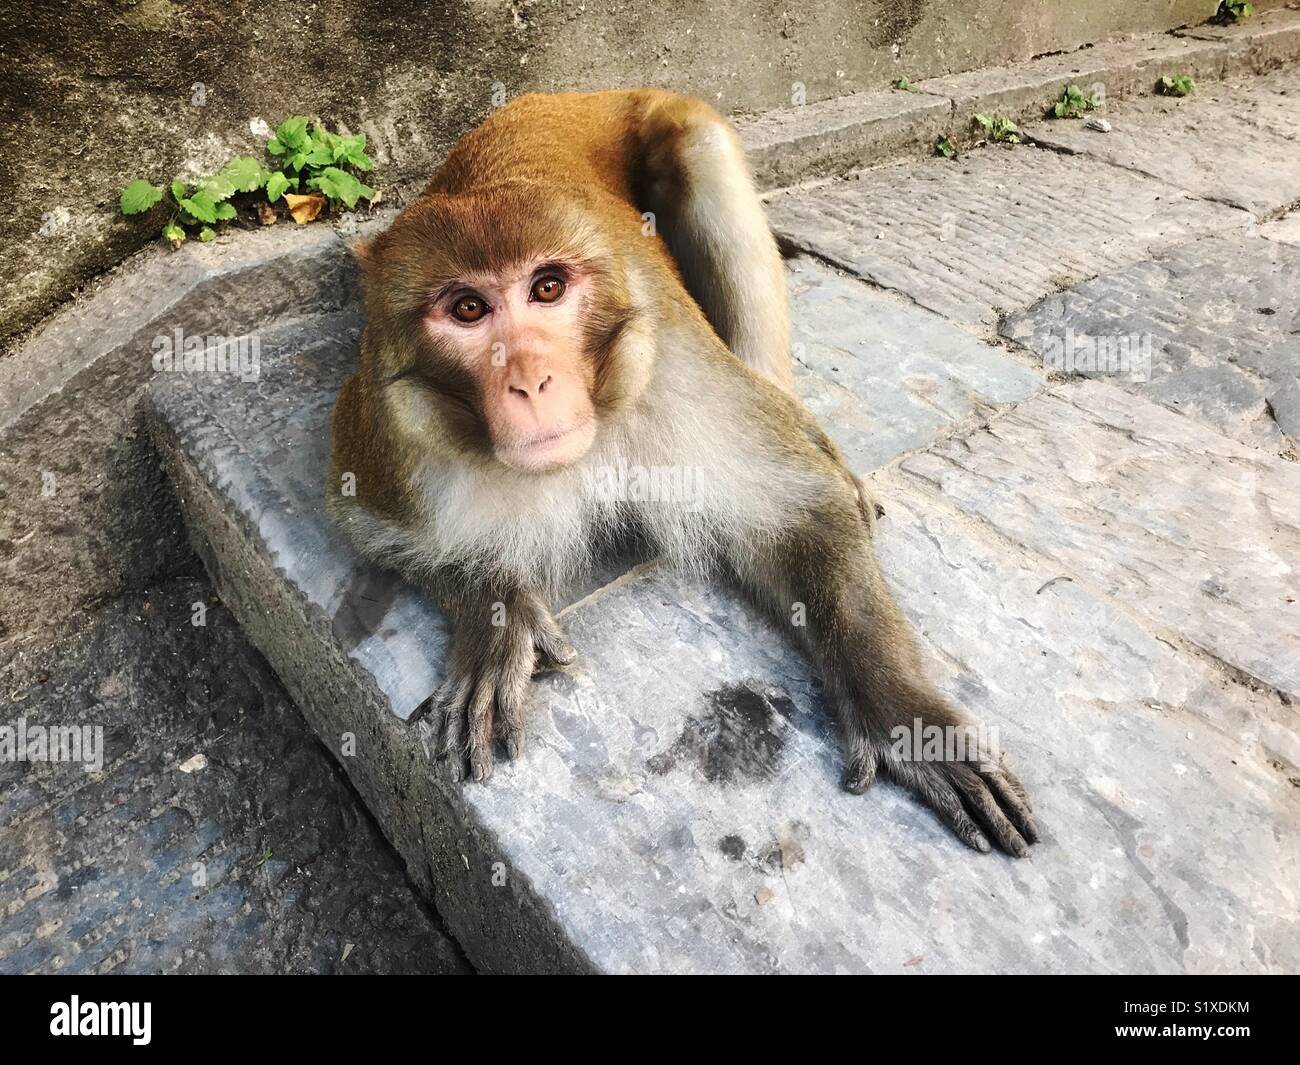 Shocked monkey at Nepal Stock Photo